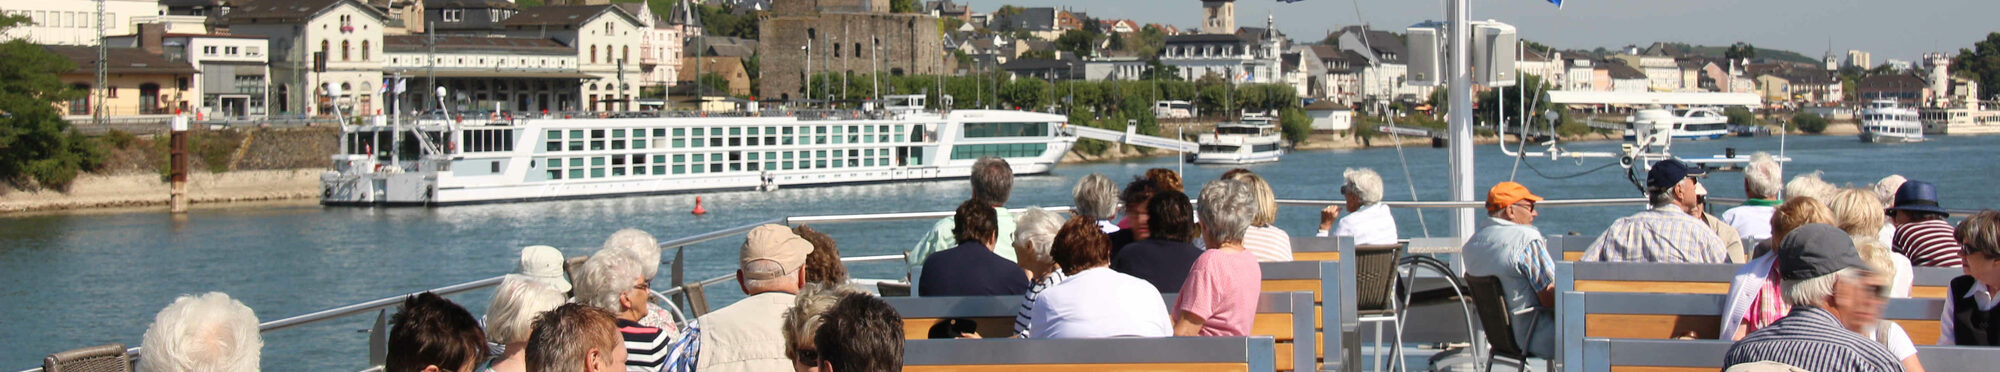 Seniorenfahrt auf dem Rhein